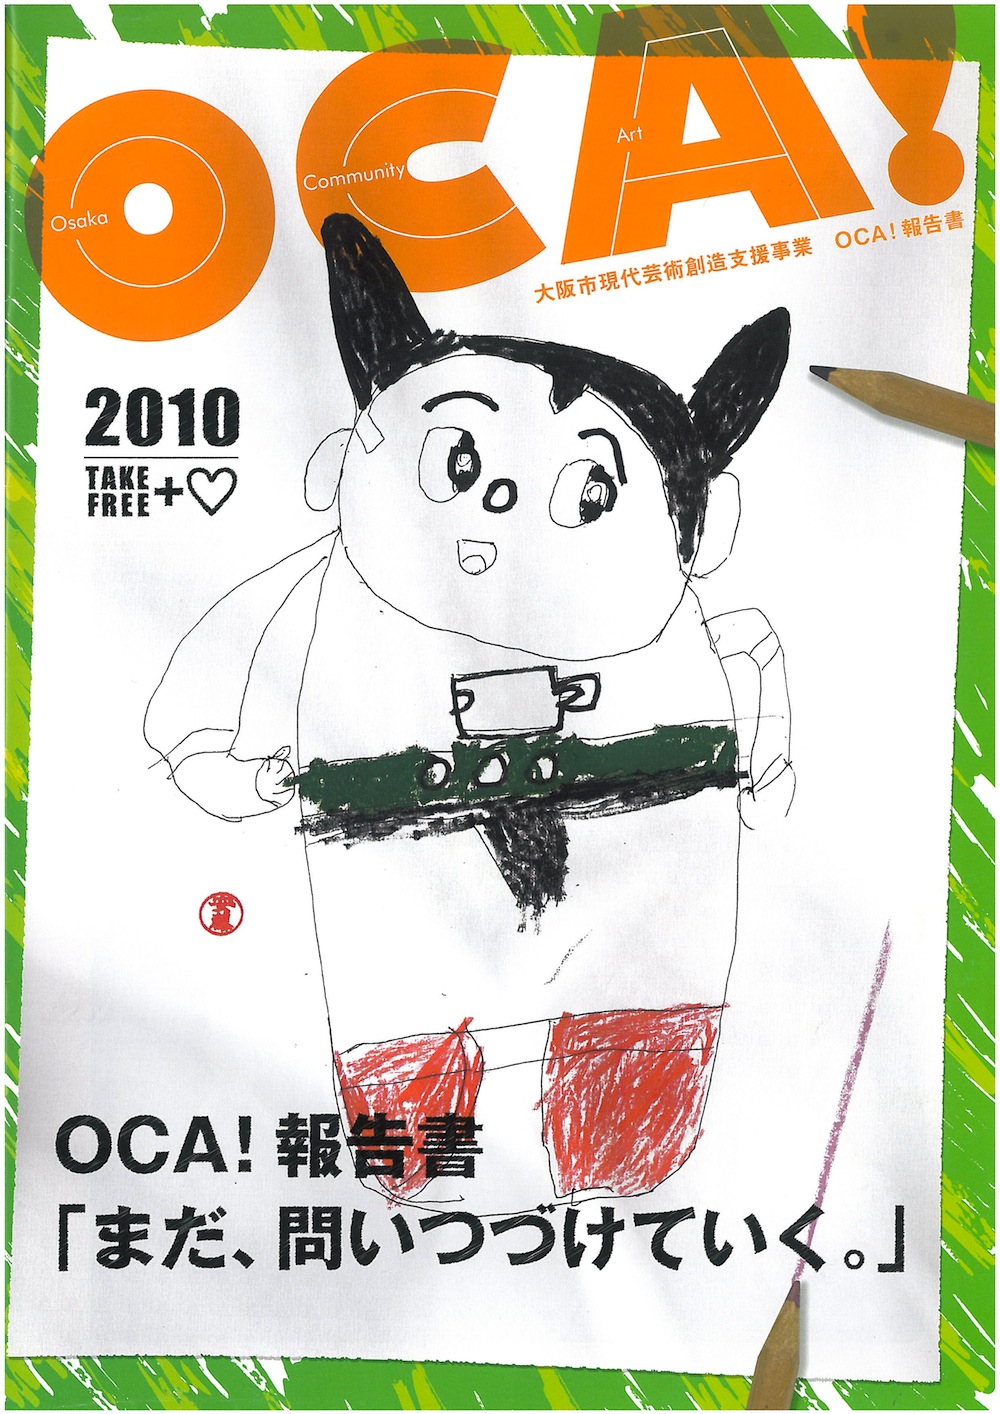 現代芸術創造支援事業OCA!大阪コミュニティアート OCA!報告書「まだ問い続けていく。」